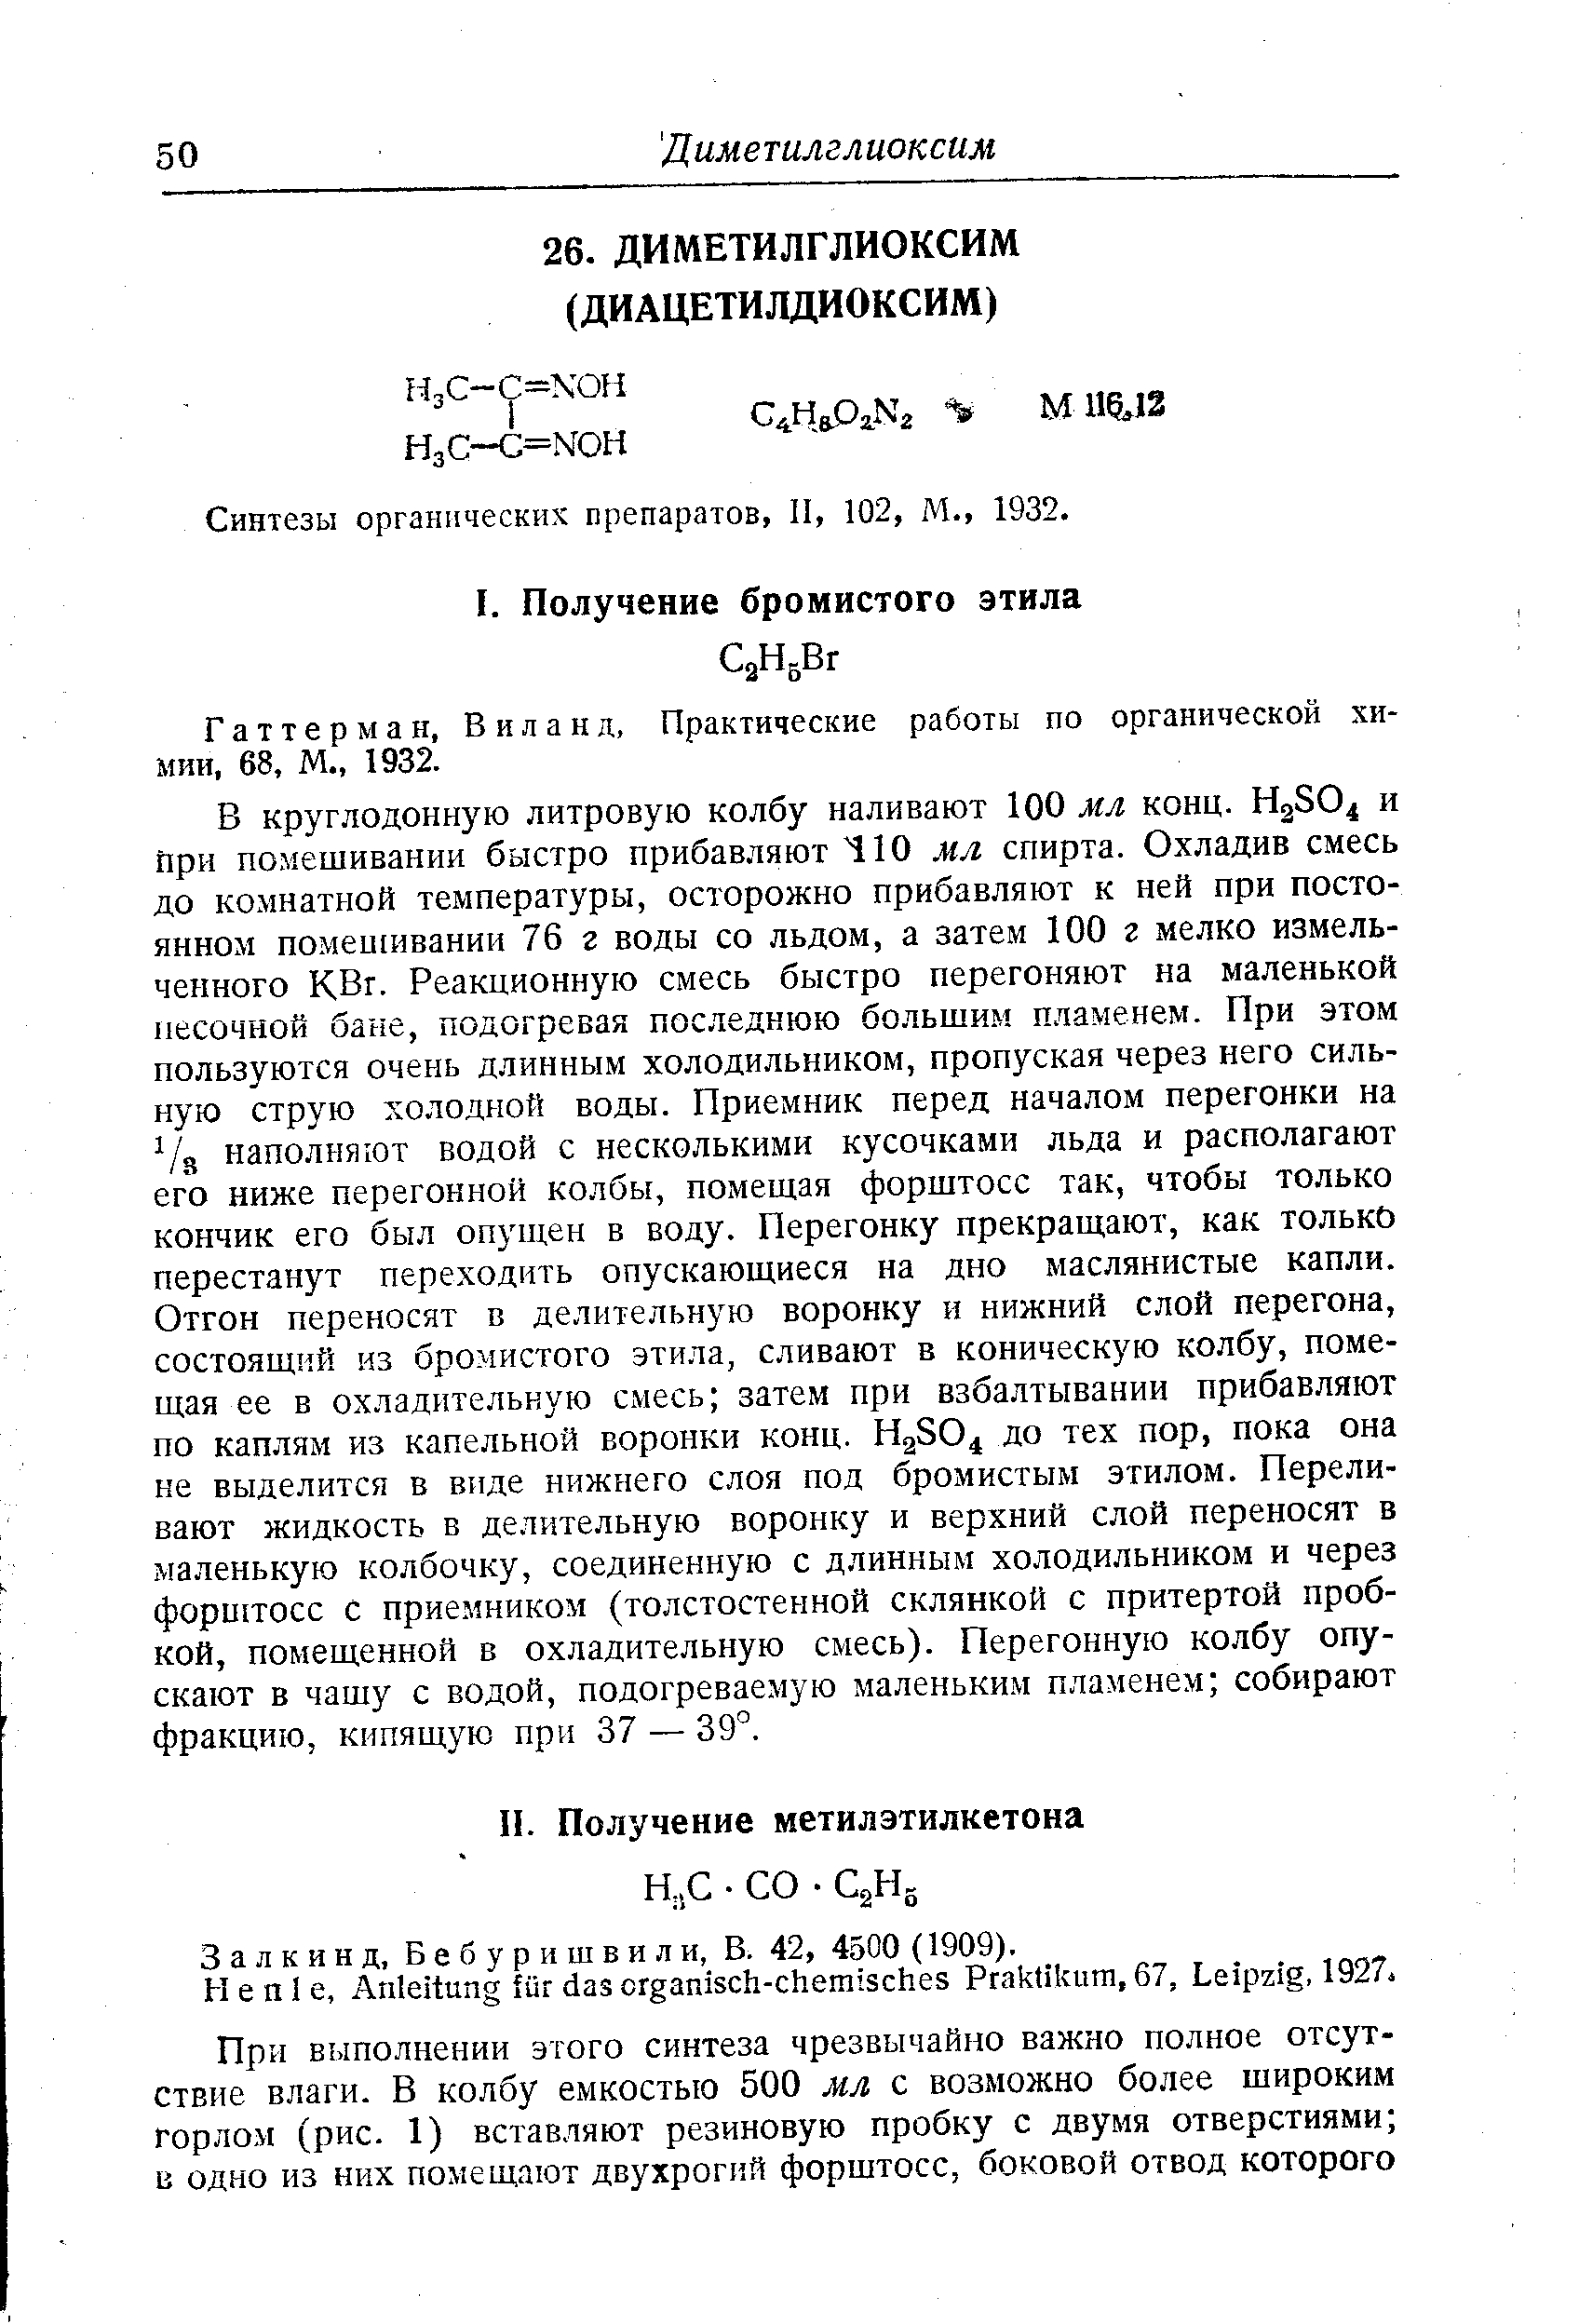 Синтезы органических препаратов, II, 102, М., 1932.